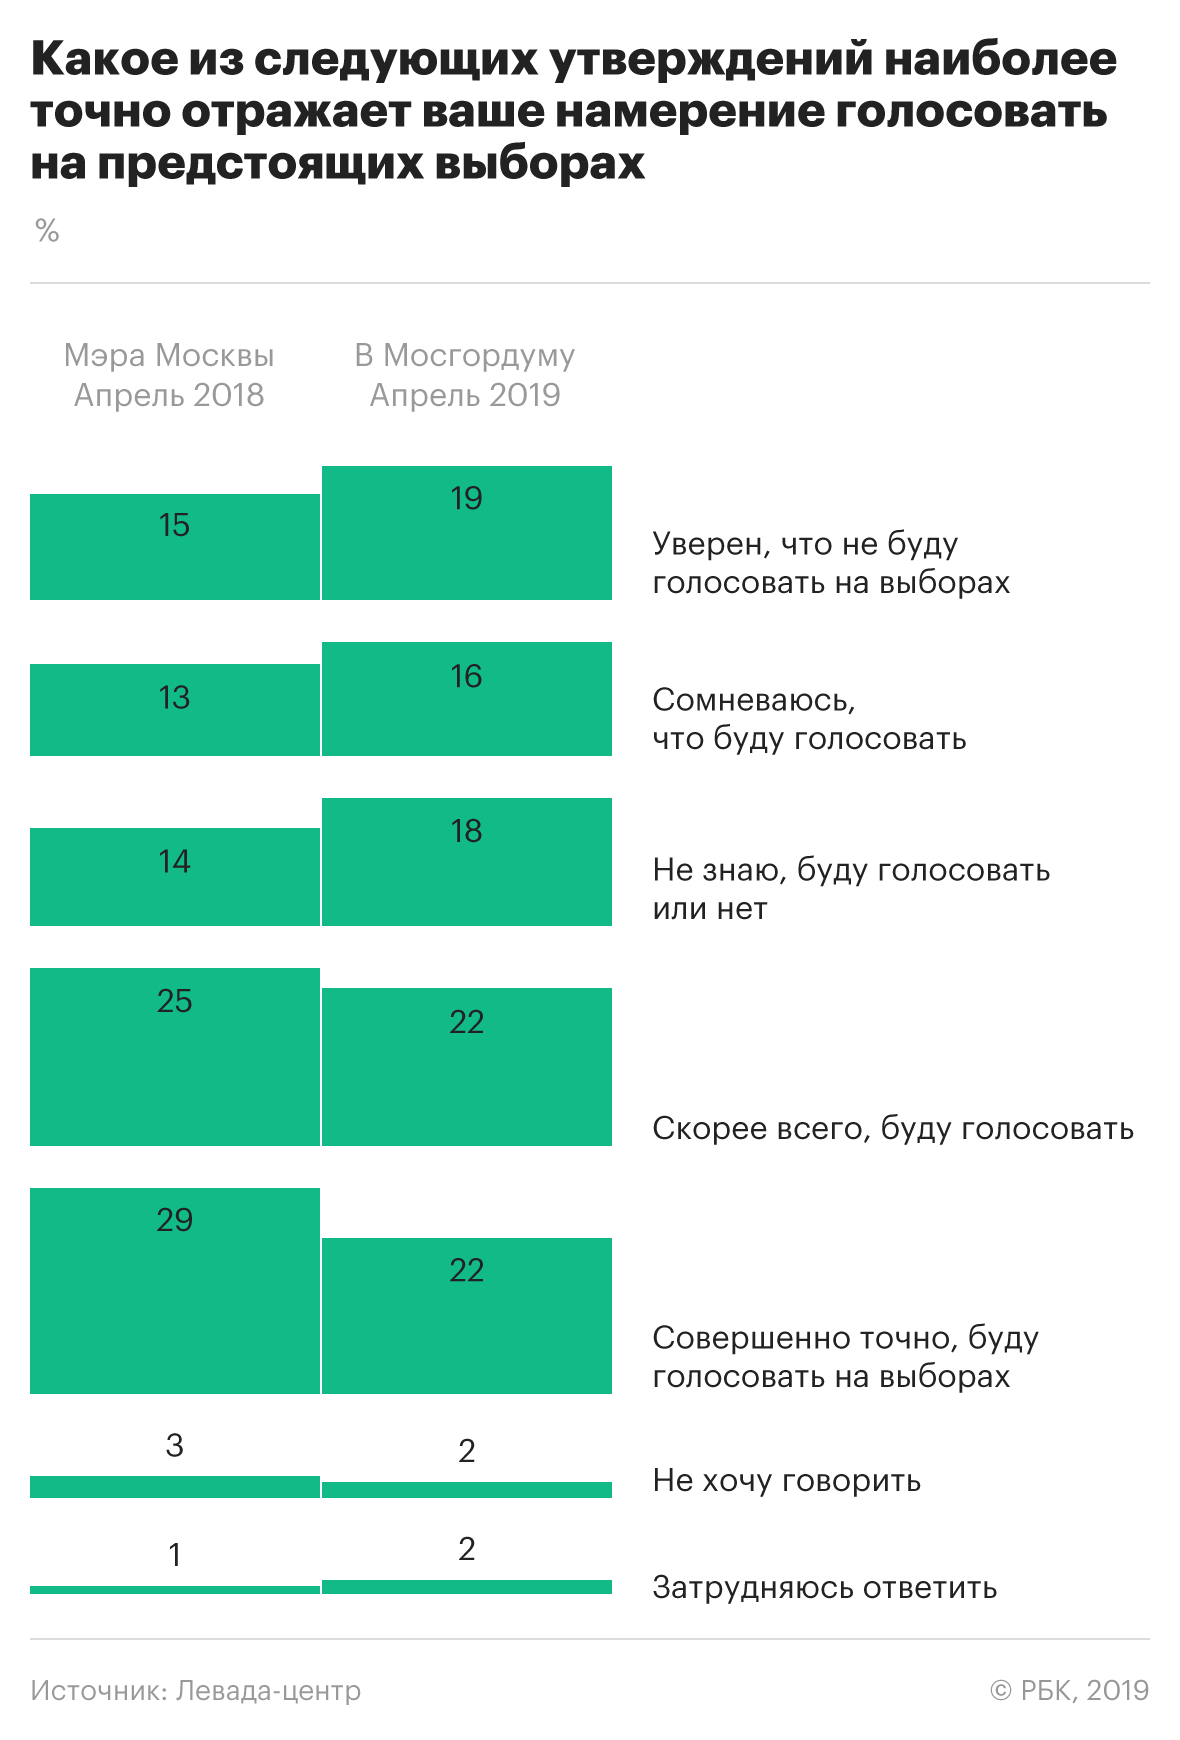 Москвичи стали меньше доверять федеральным властям и больше Собянину